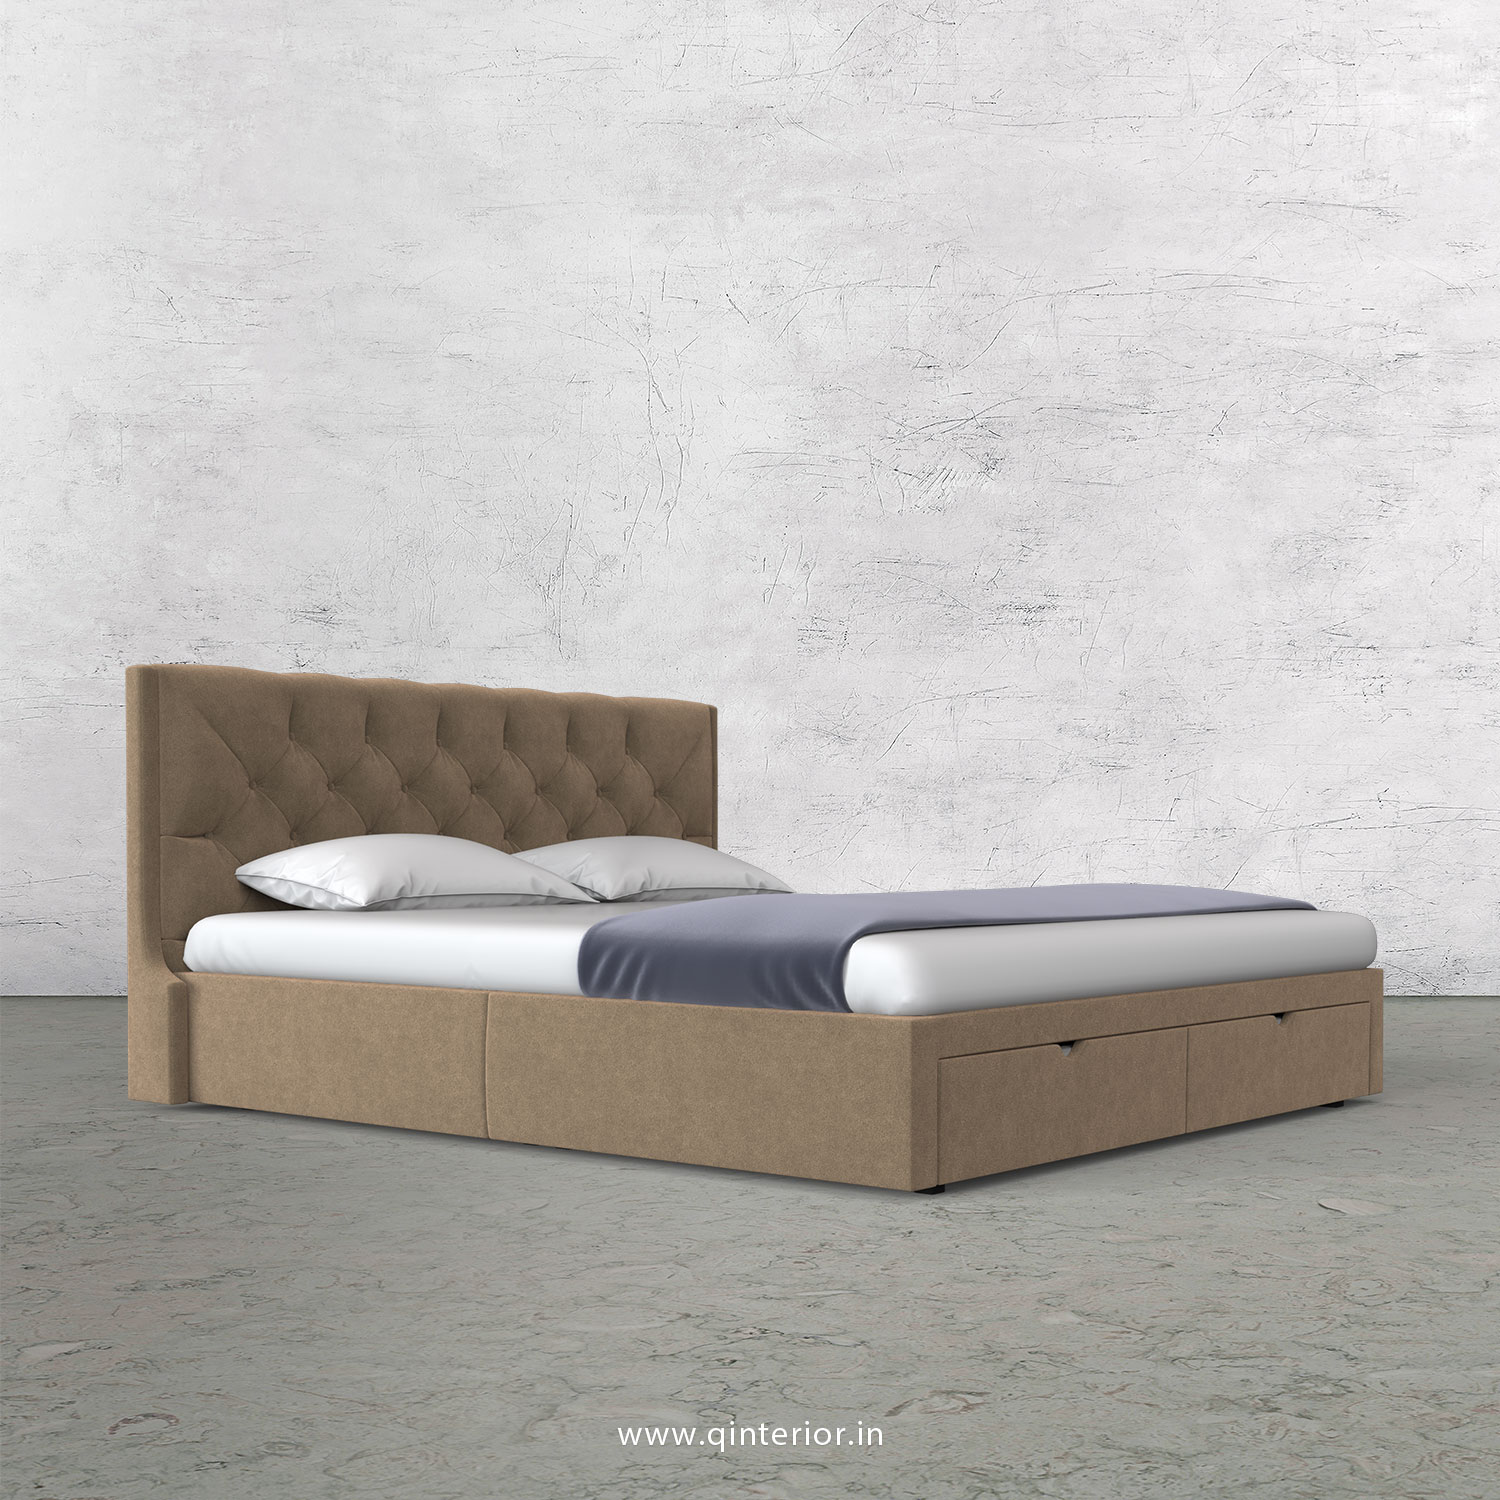 Scorpius Queen Storage Bed in Velvet Fabric - QBD001 VL03